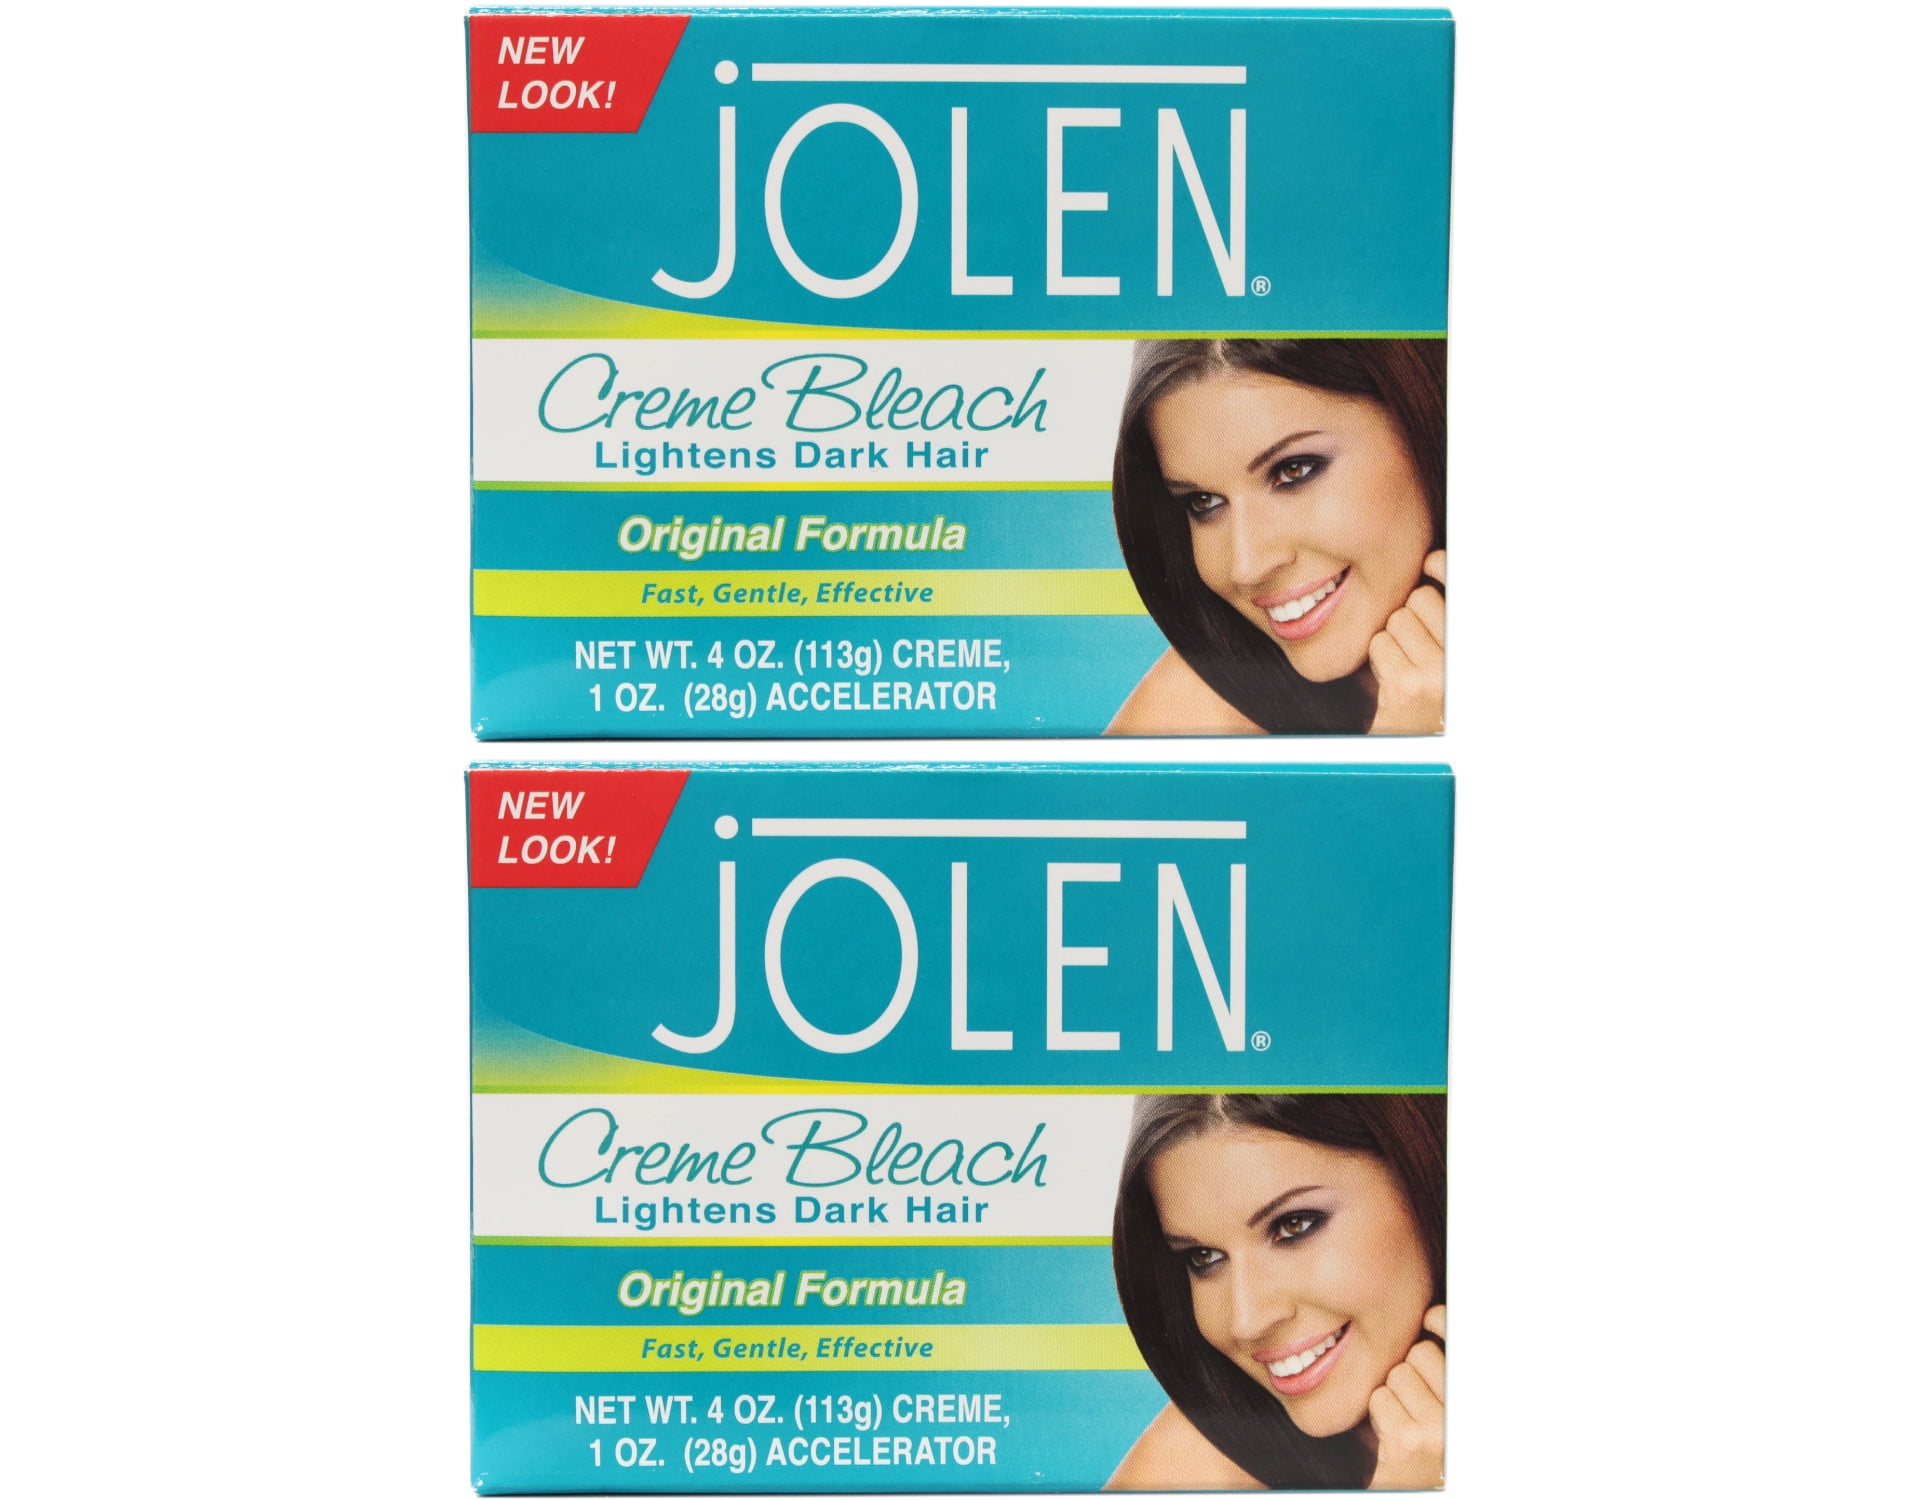 Jolen Creme Bleach Lightens Dark Hair Original Formula Kit, 2 Pack -  